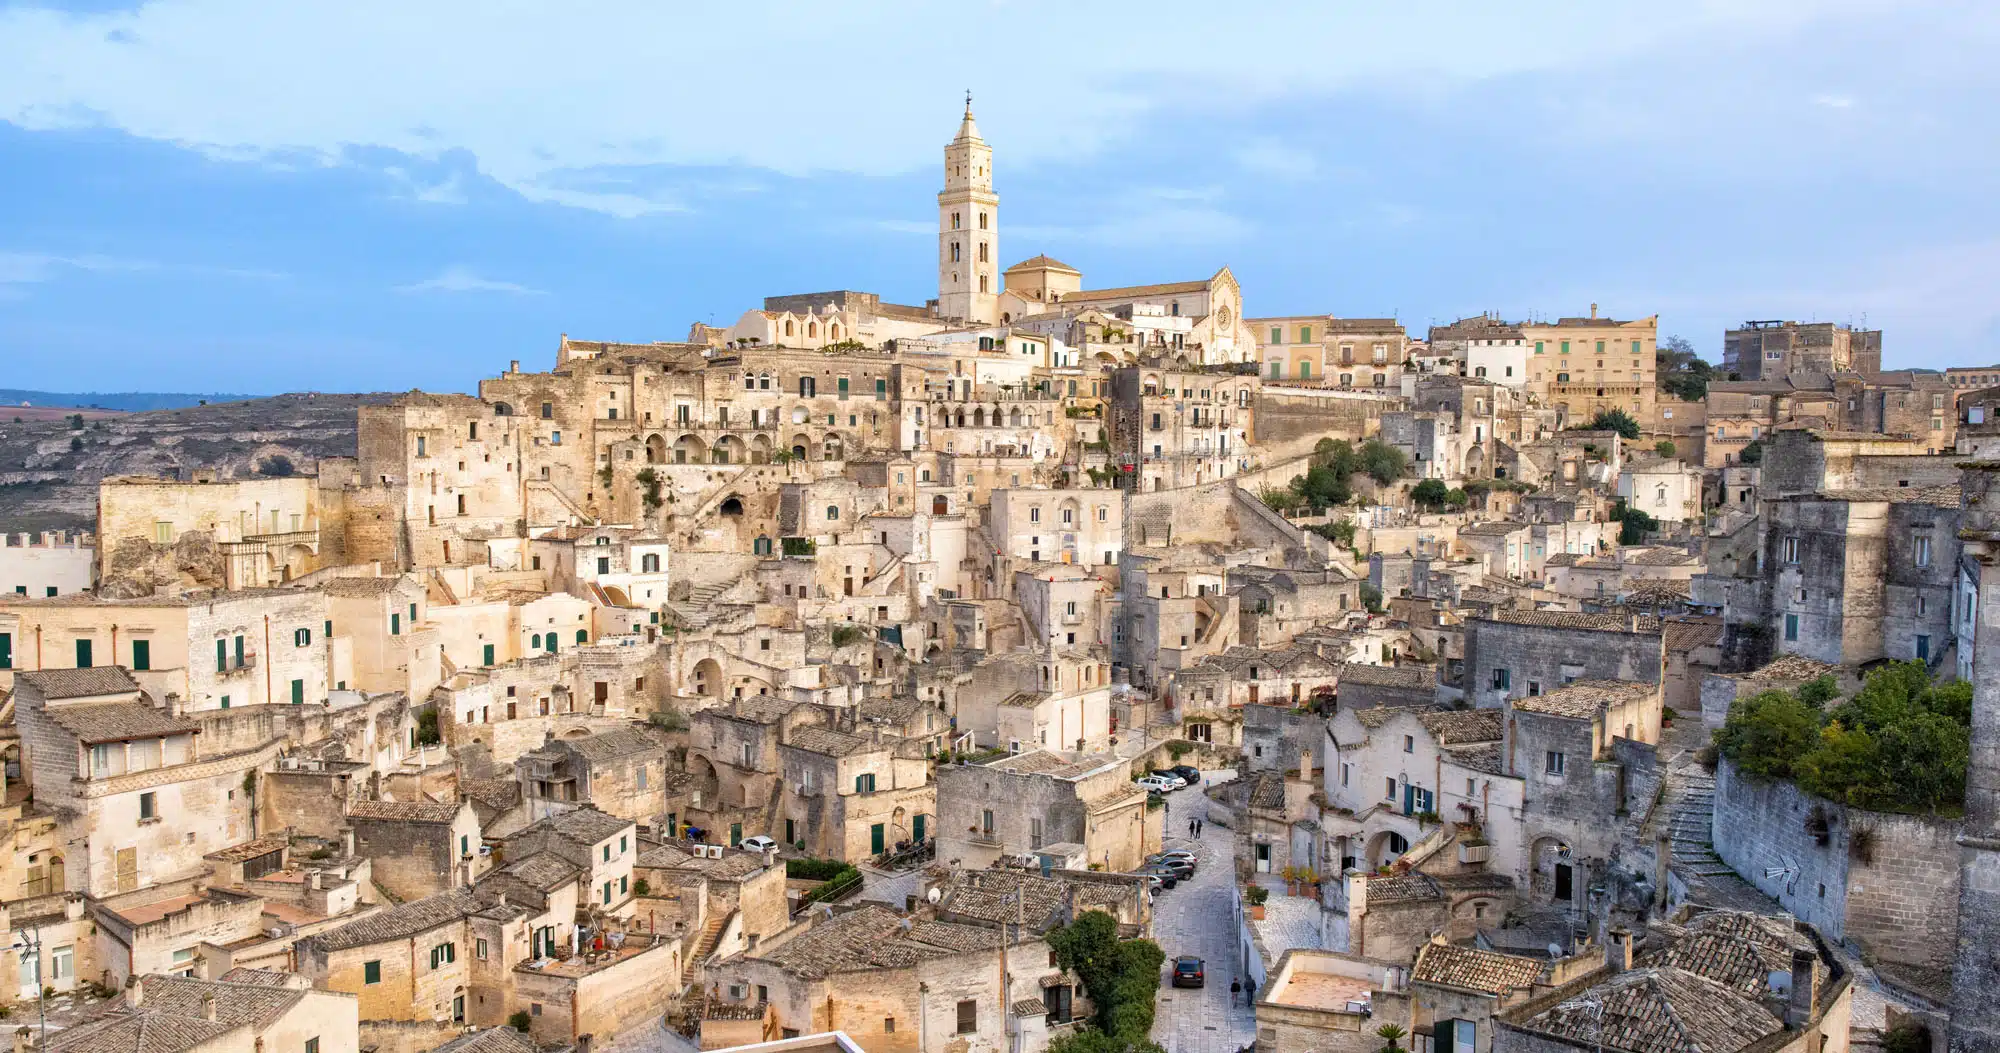 Featured image for “Southern Italy Itinerary: Amalfi Coast, Matera, Alberobello & Puglia”